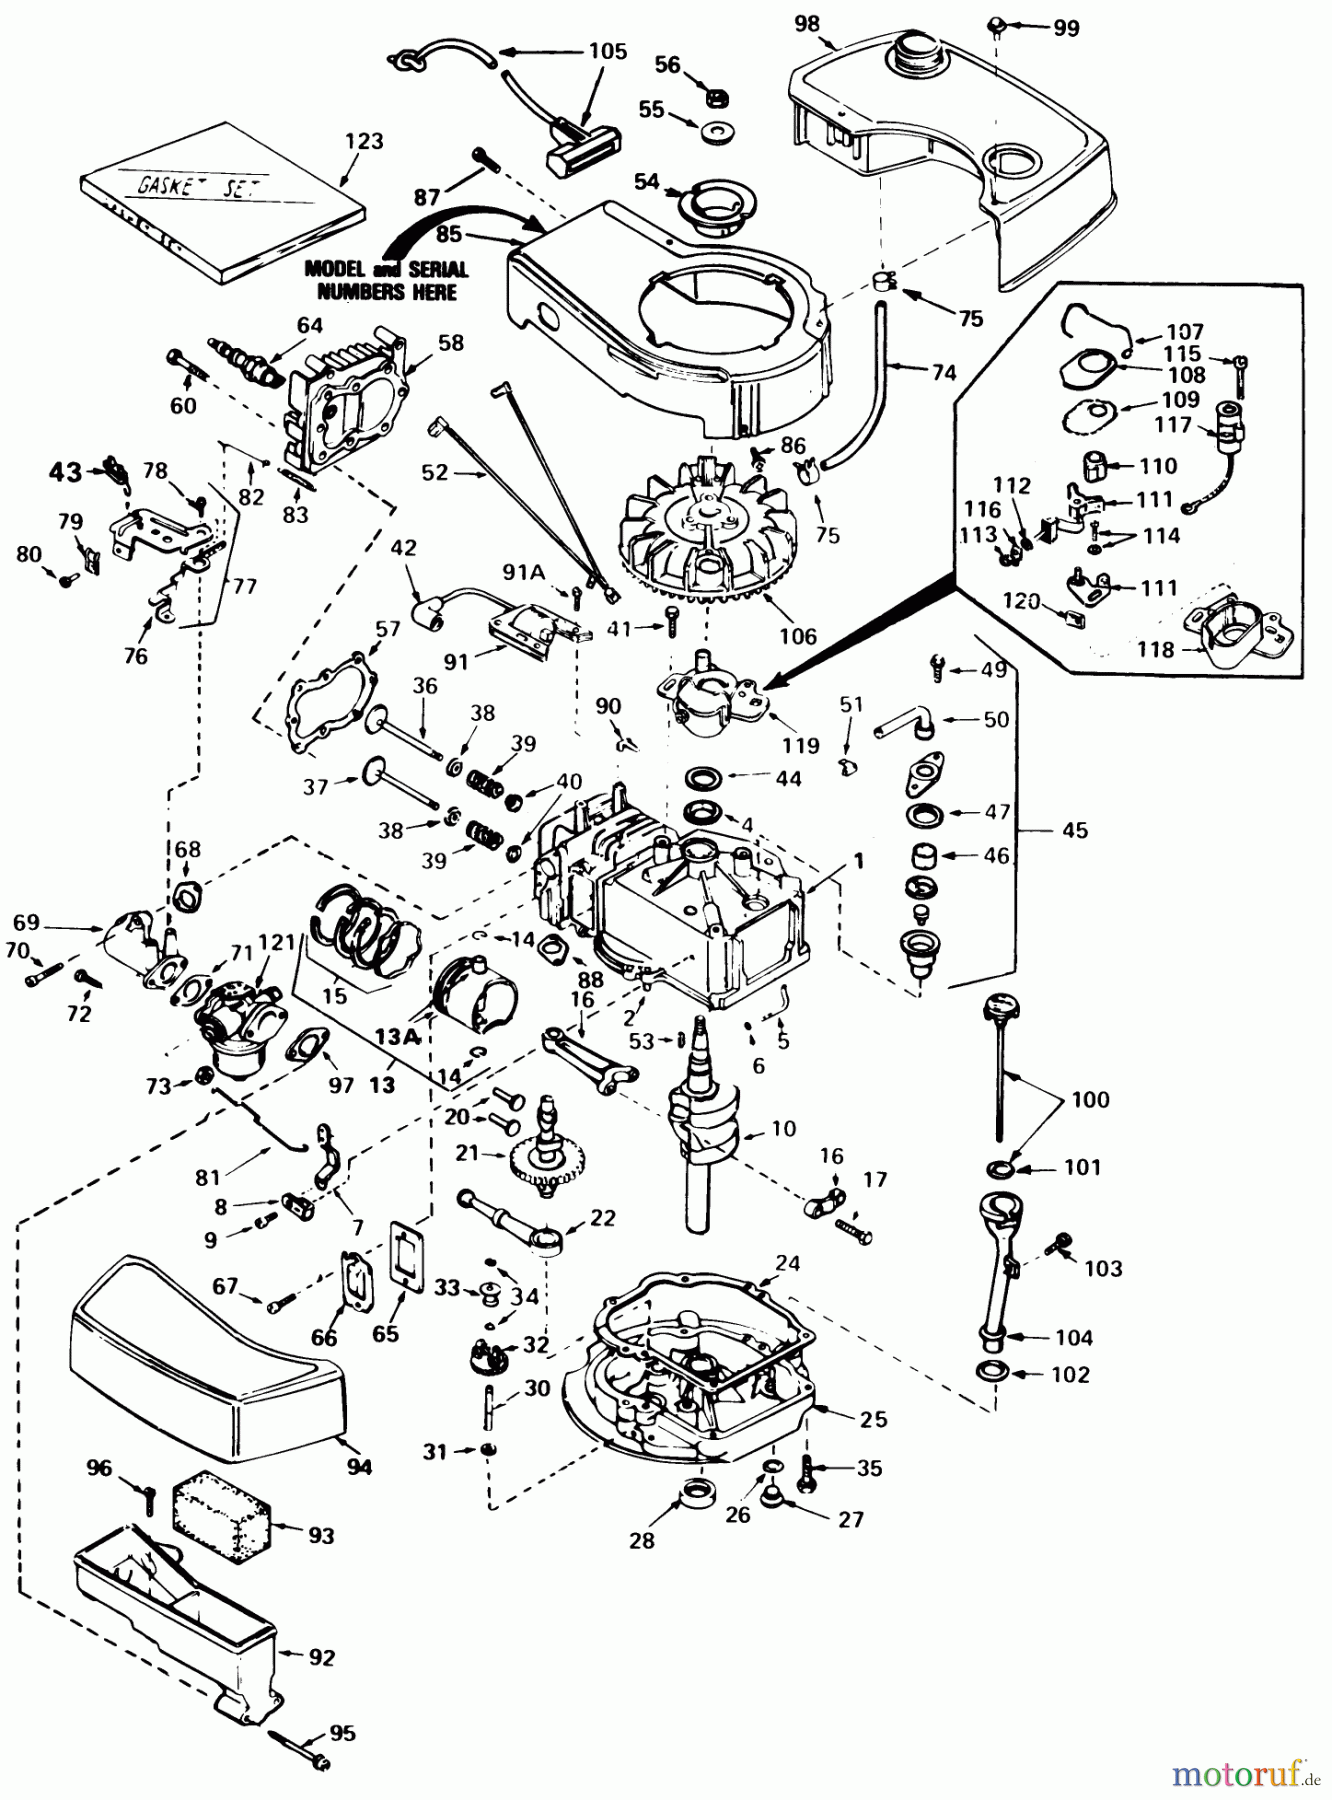  Toro Neu Mowers, Walk-Behind Seite 1 20715 - Toro Lawnmower, 1981 (1000001-1999999) ENGINE TECUMSEH MODEL NO. TNT 100-10065D